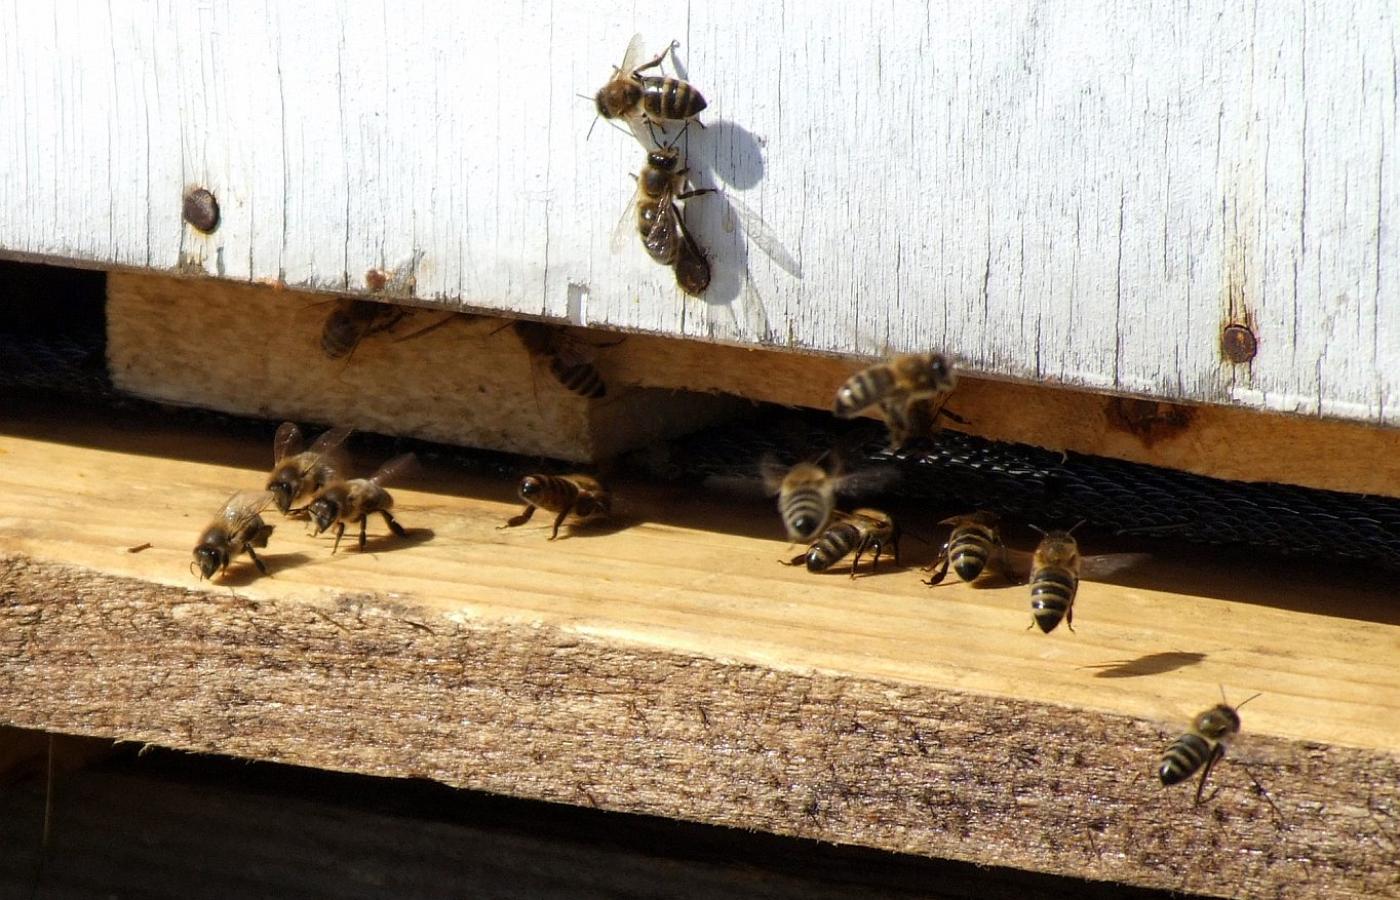 „Zależało mi - mówi reżyser Markus Imhoof - na pokazaniu pszczół w taki sposób, by wywołać u widzów empatię do tych stworzeń”.